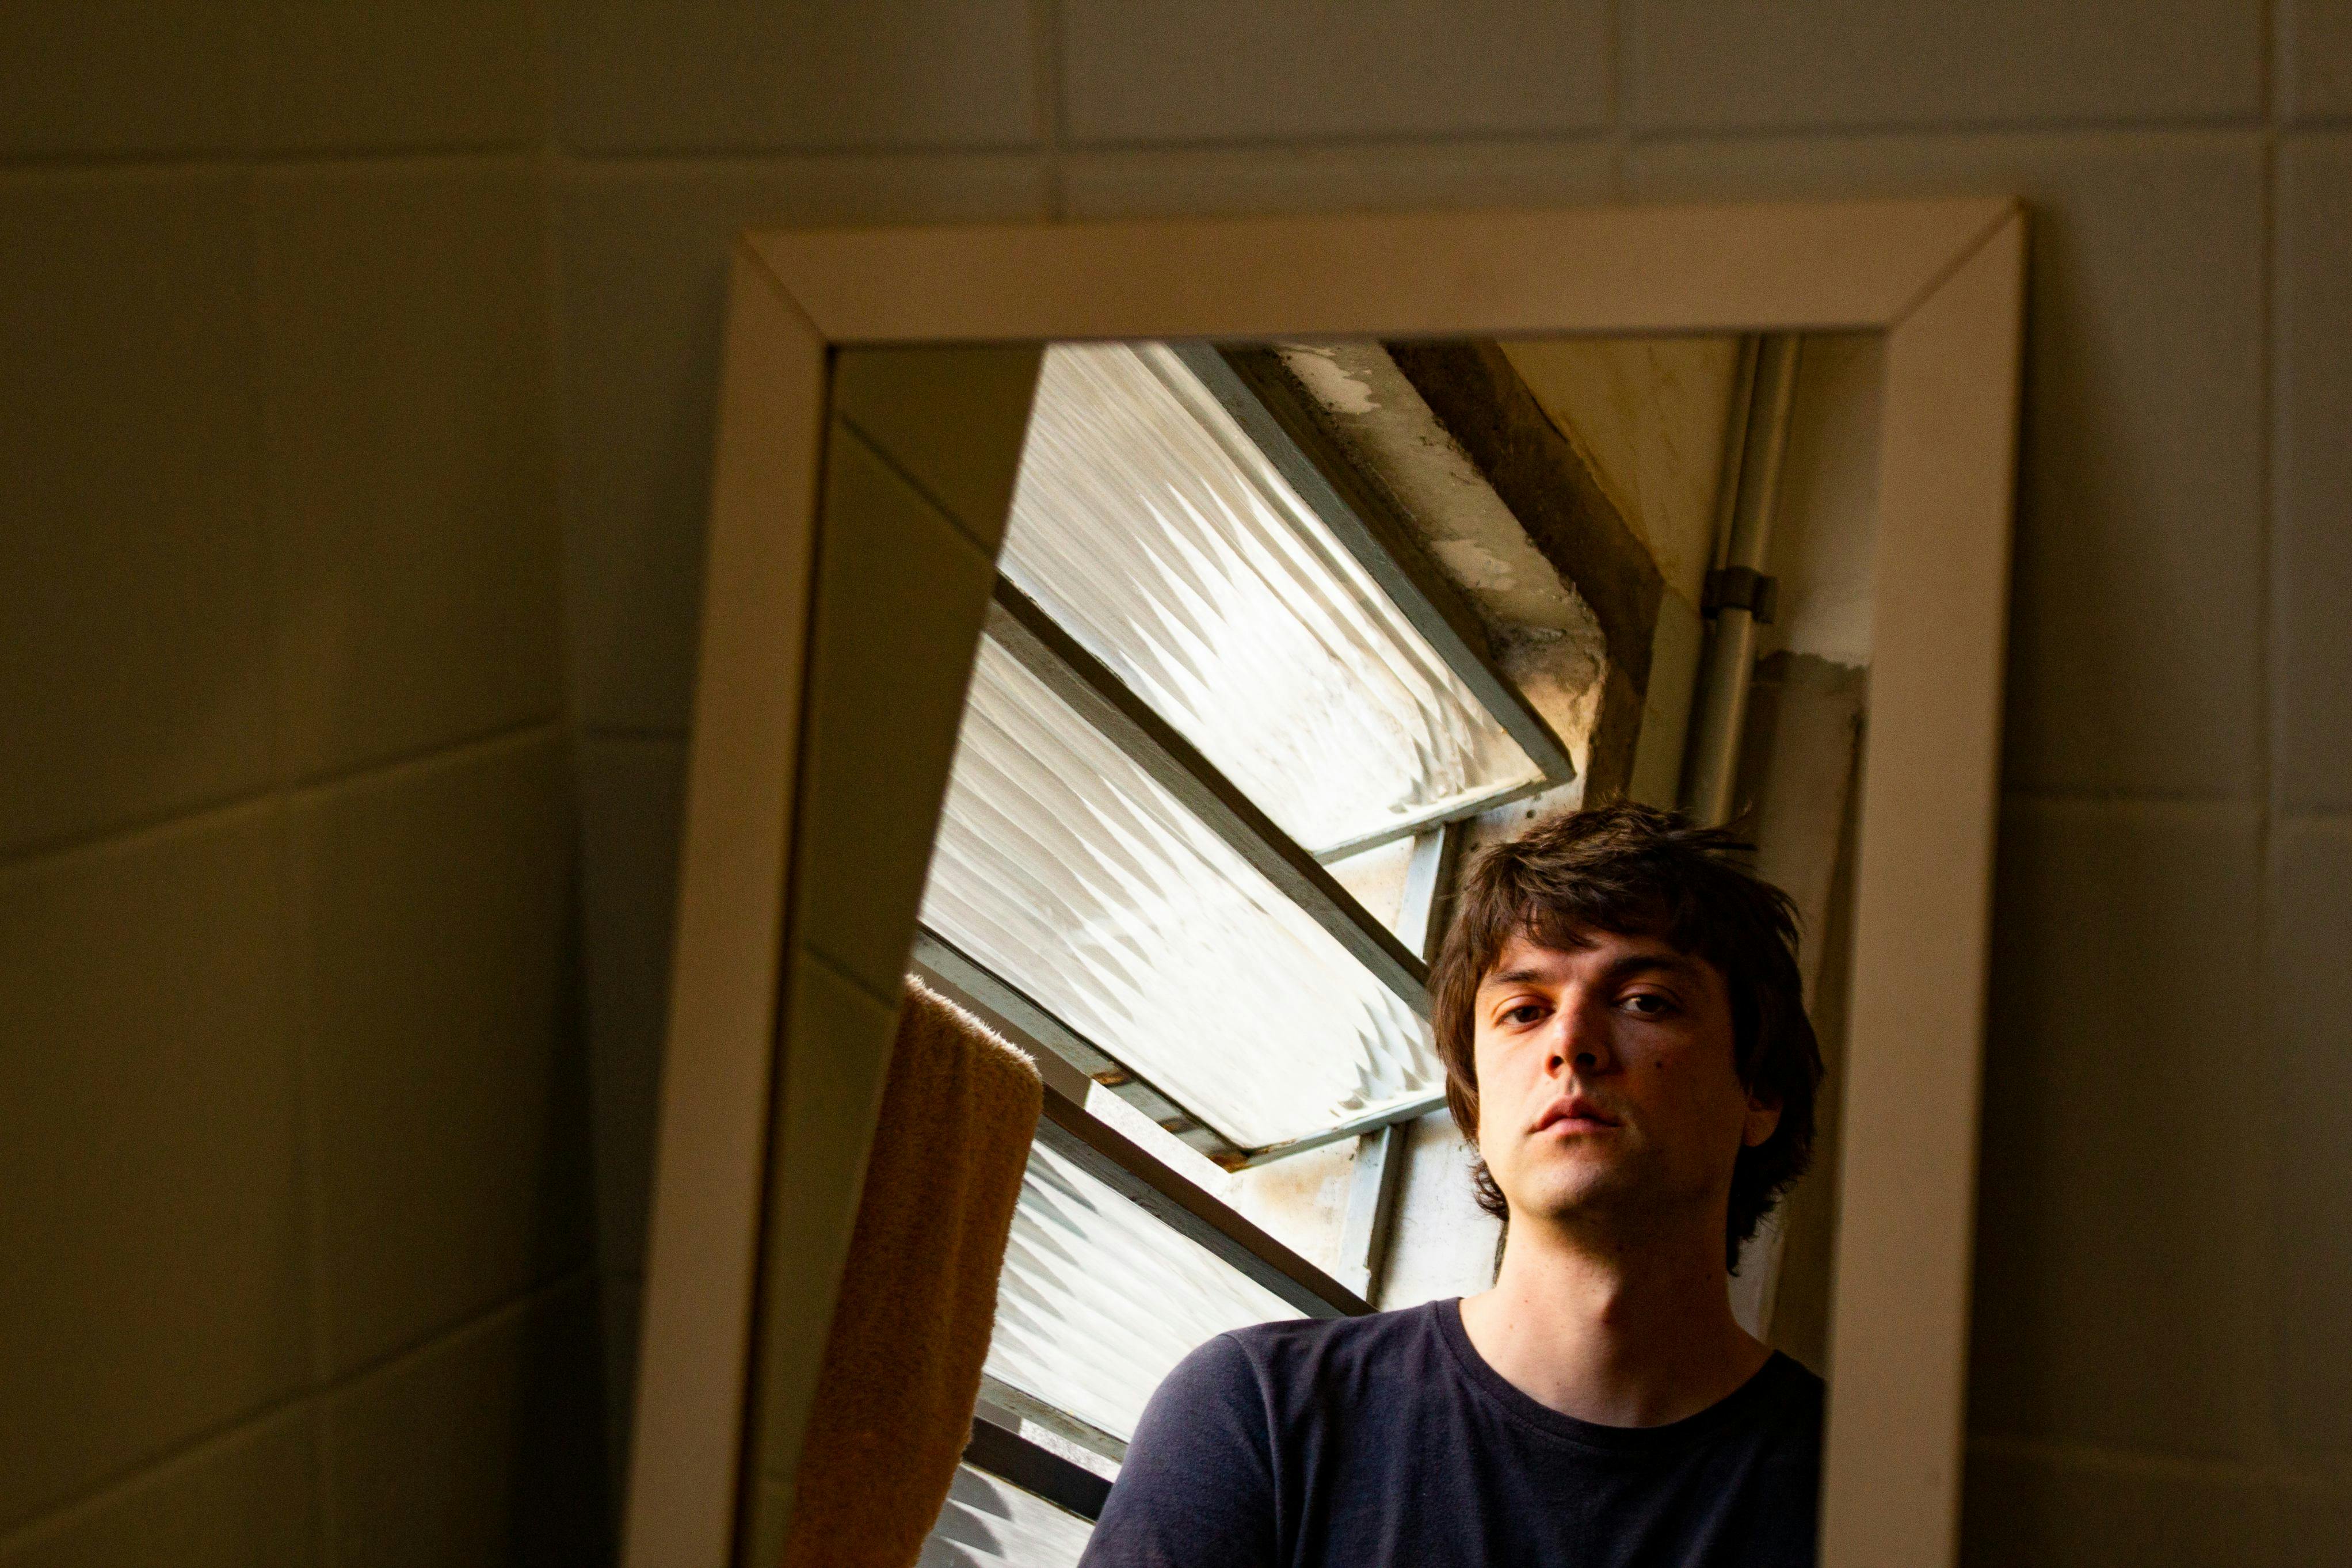 Juliano fm Costa aparece encarando o espelho. Atrás do acessório, há a parede, igualmente bege. A janela, atrás de Juliano, aparece no espelho.